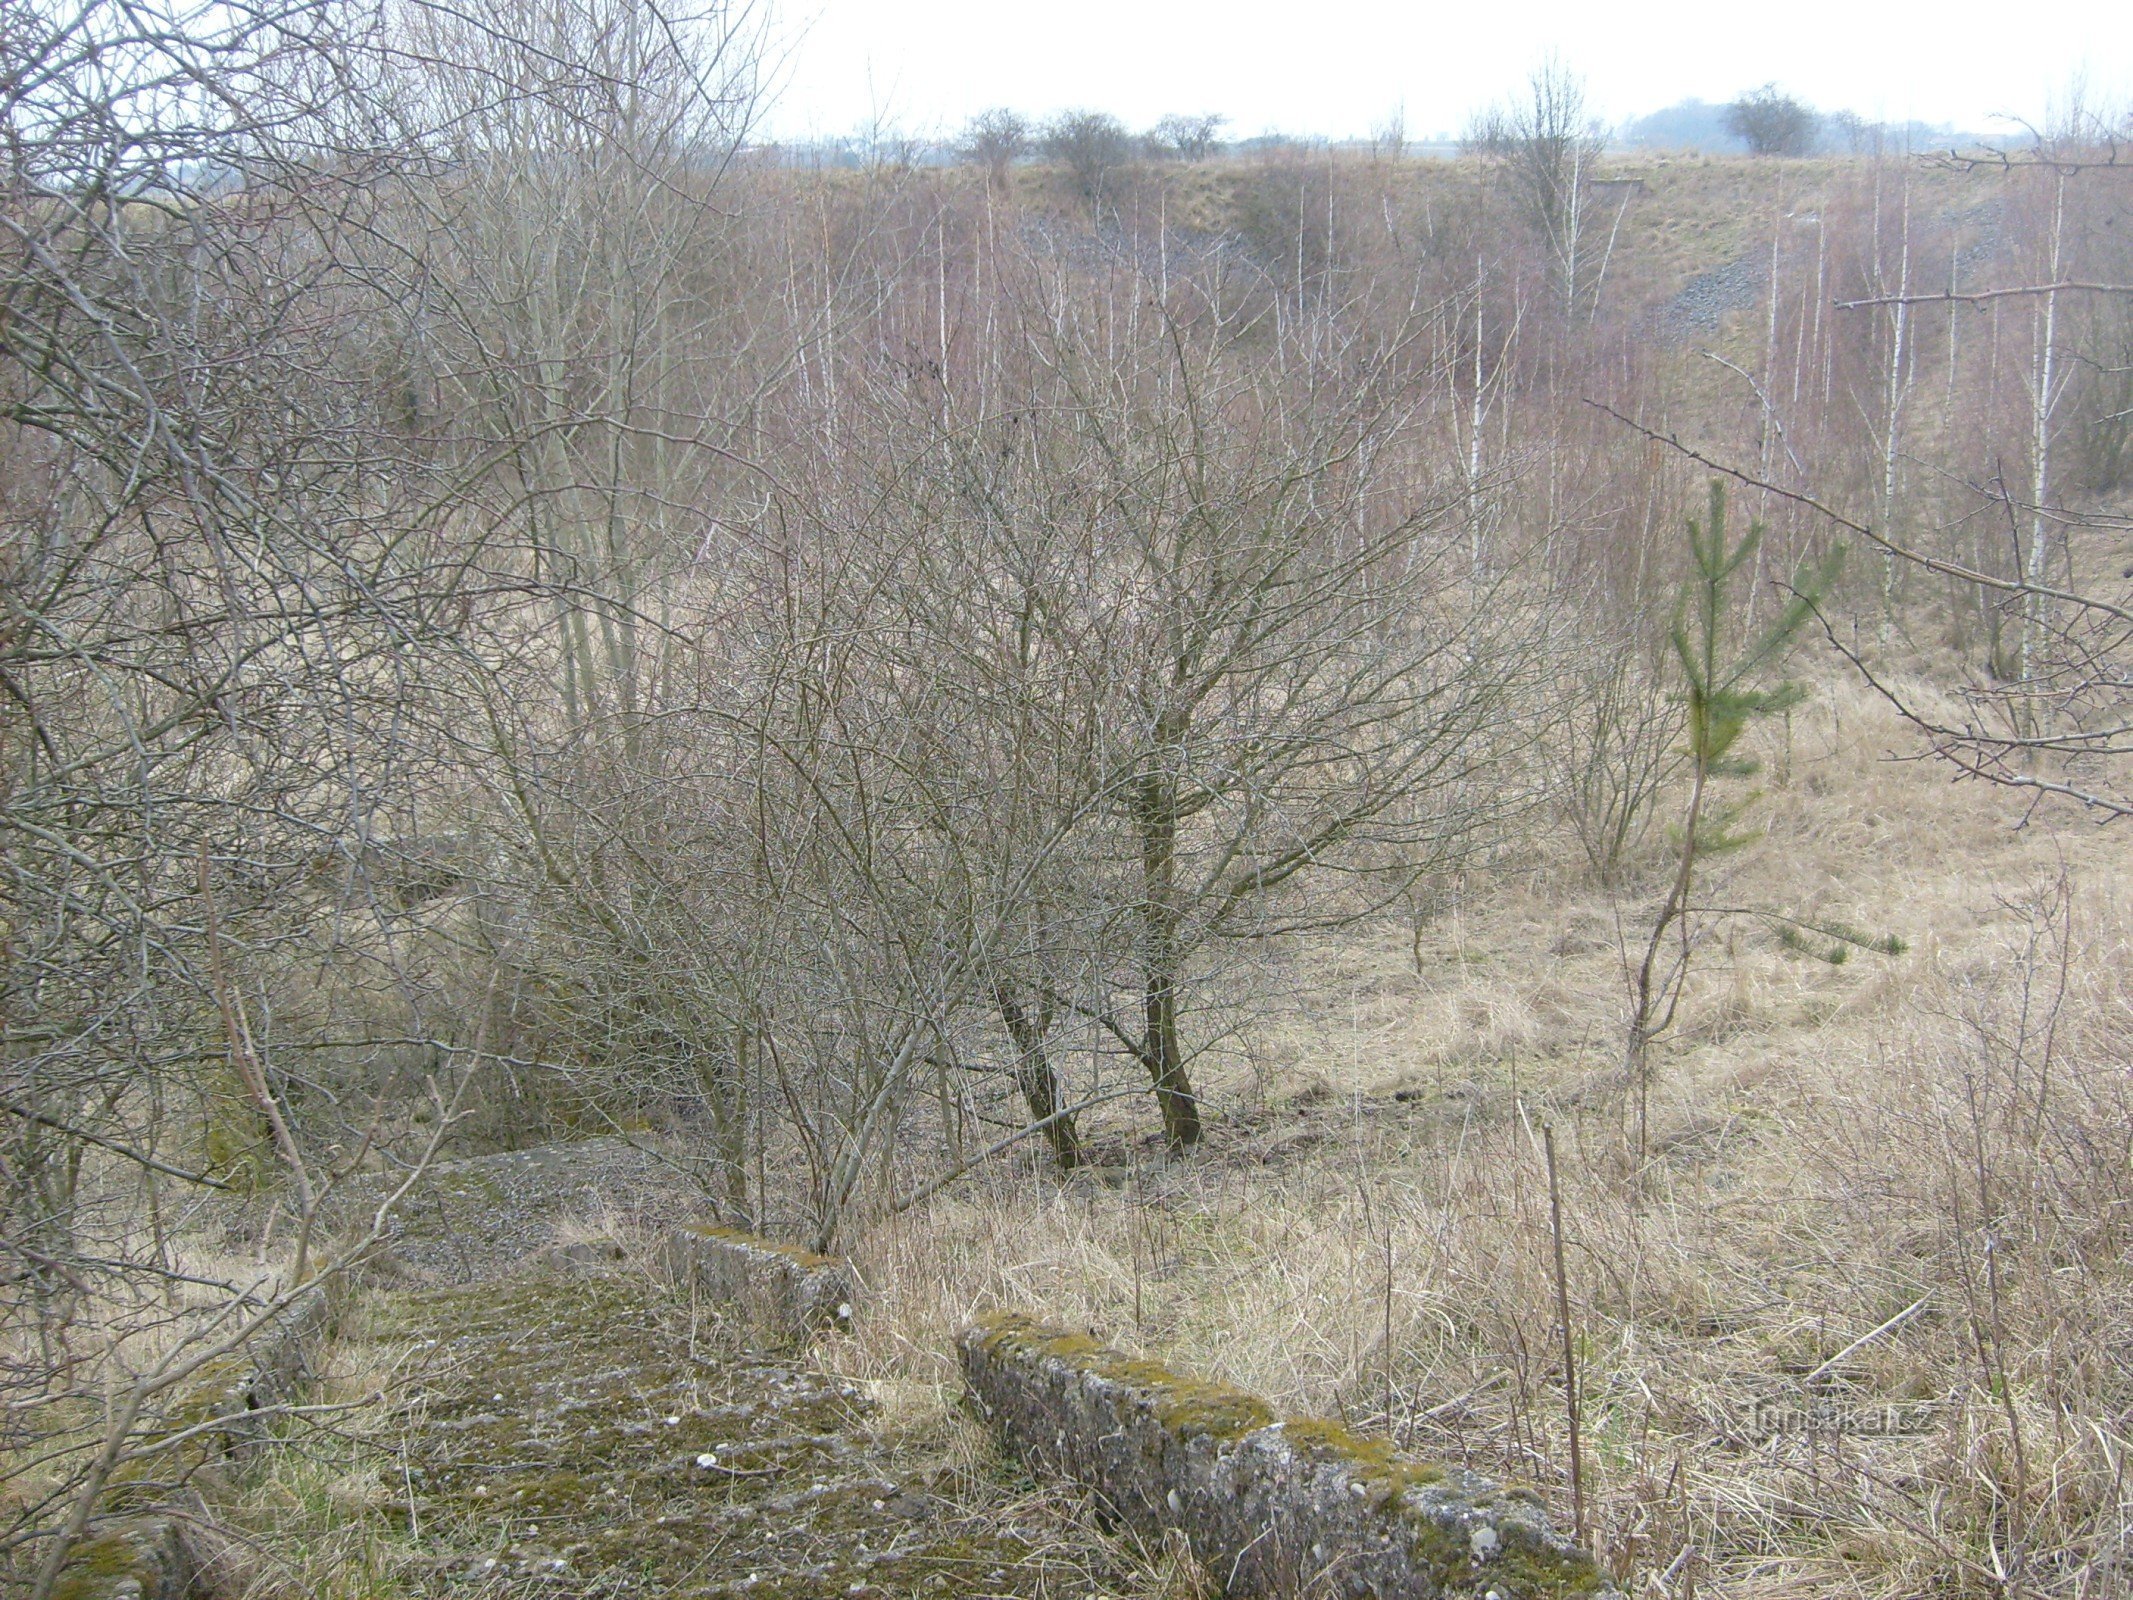 The former Skupice agricultural reservoir